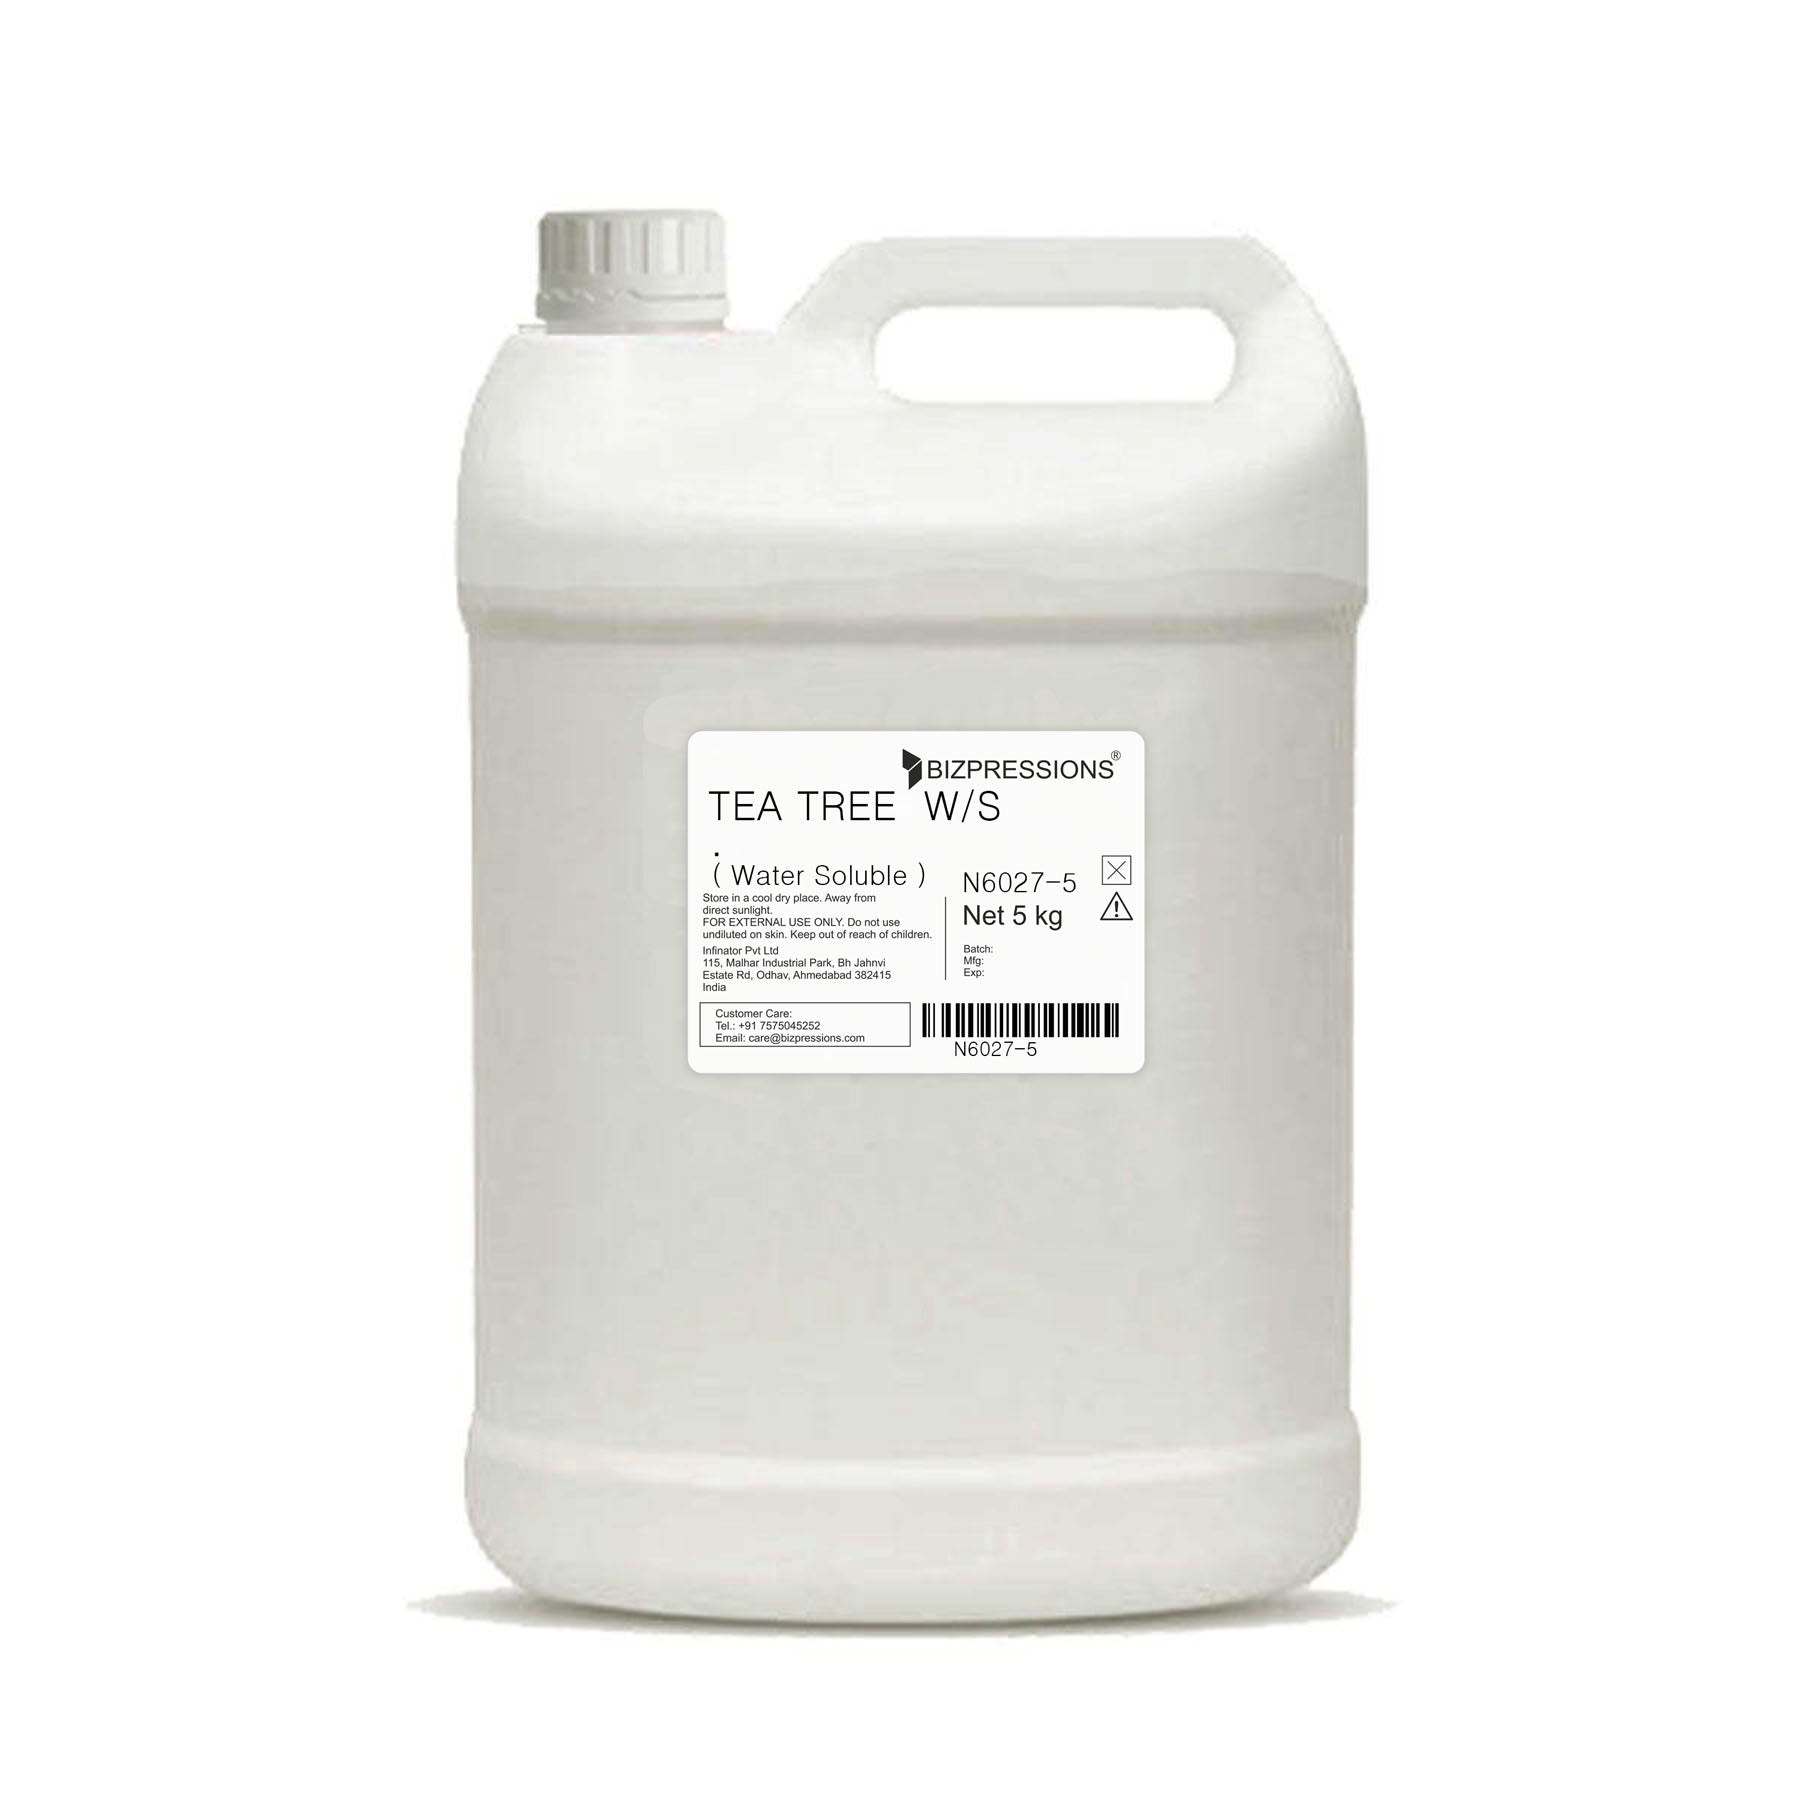 TEA TREE W/S - Fragrance ( Water Soluble ) - 5 kg